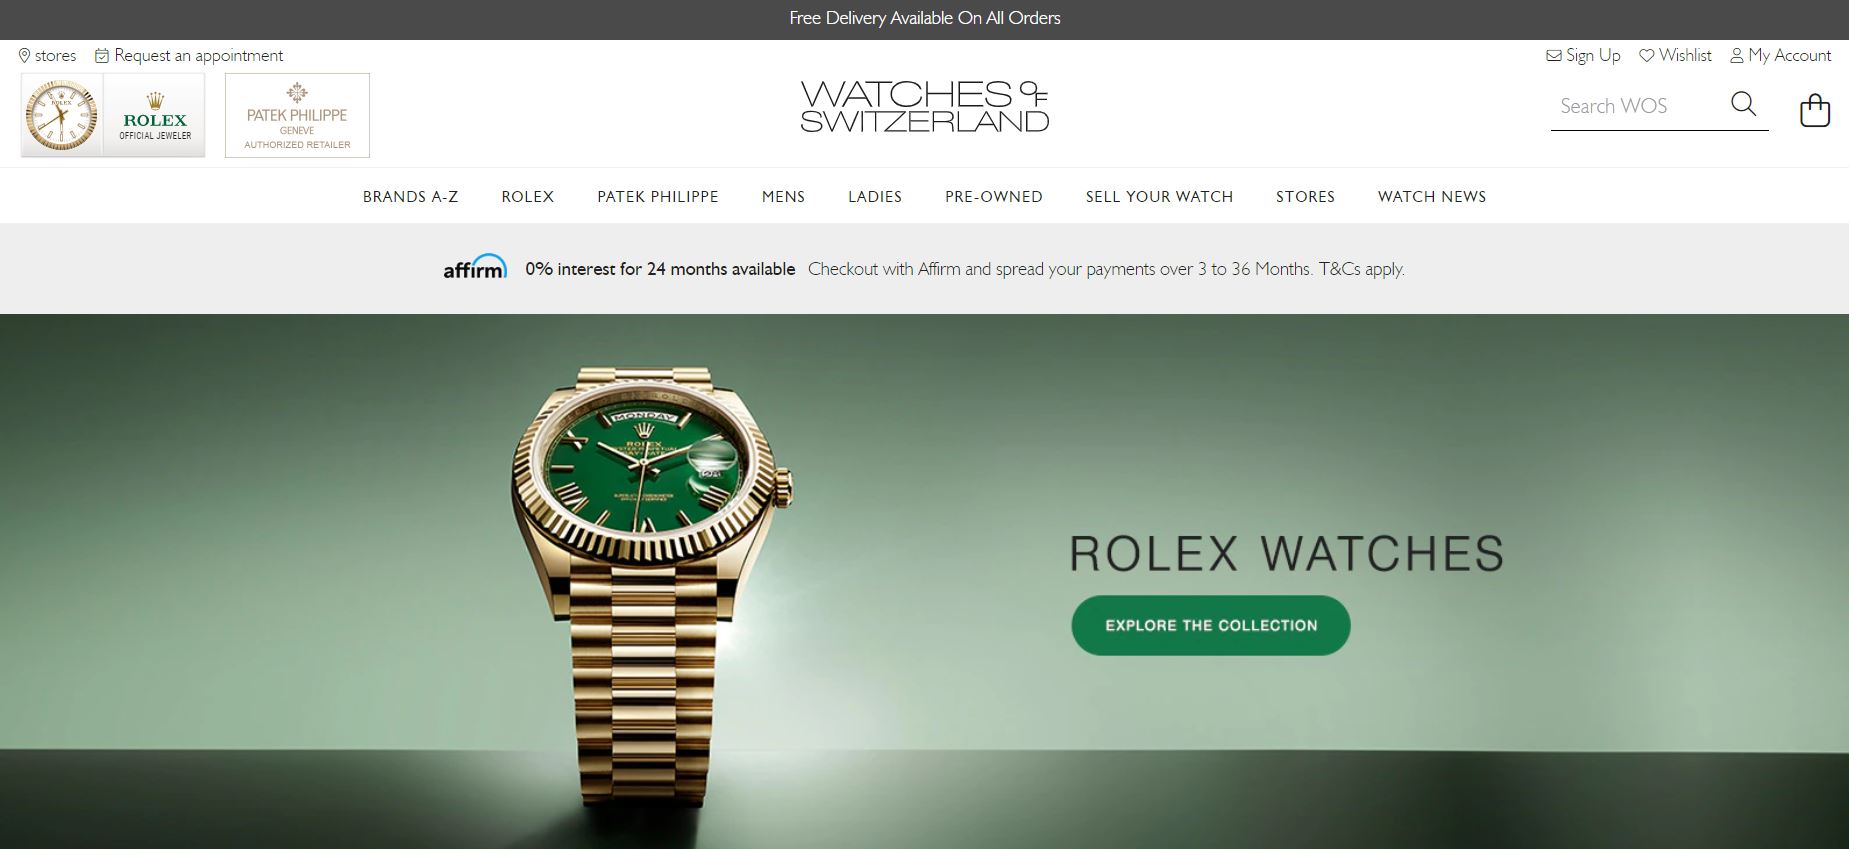 英国奢侈钟表零售商Watches of Switzerland上半财年美国市场大涨86%，奢侈珠宝增速高于手表